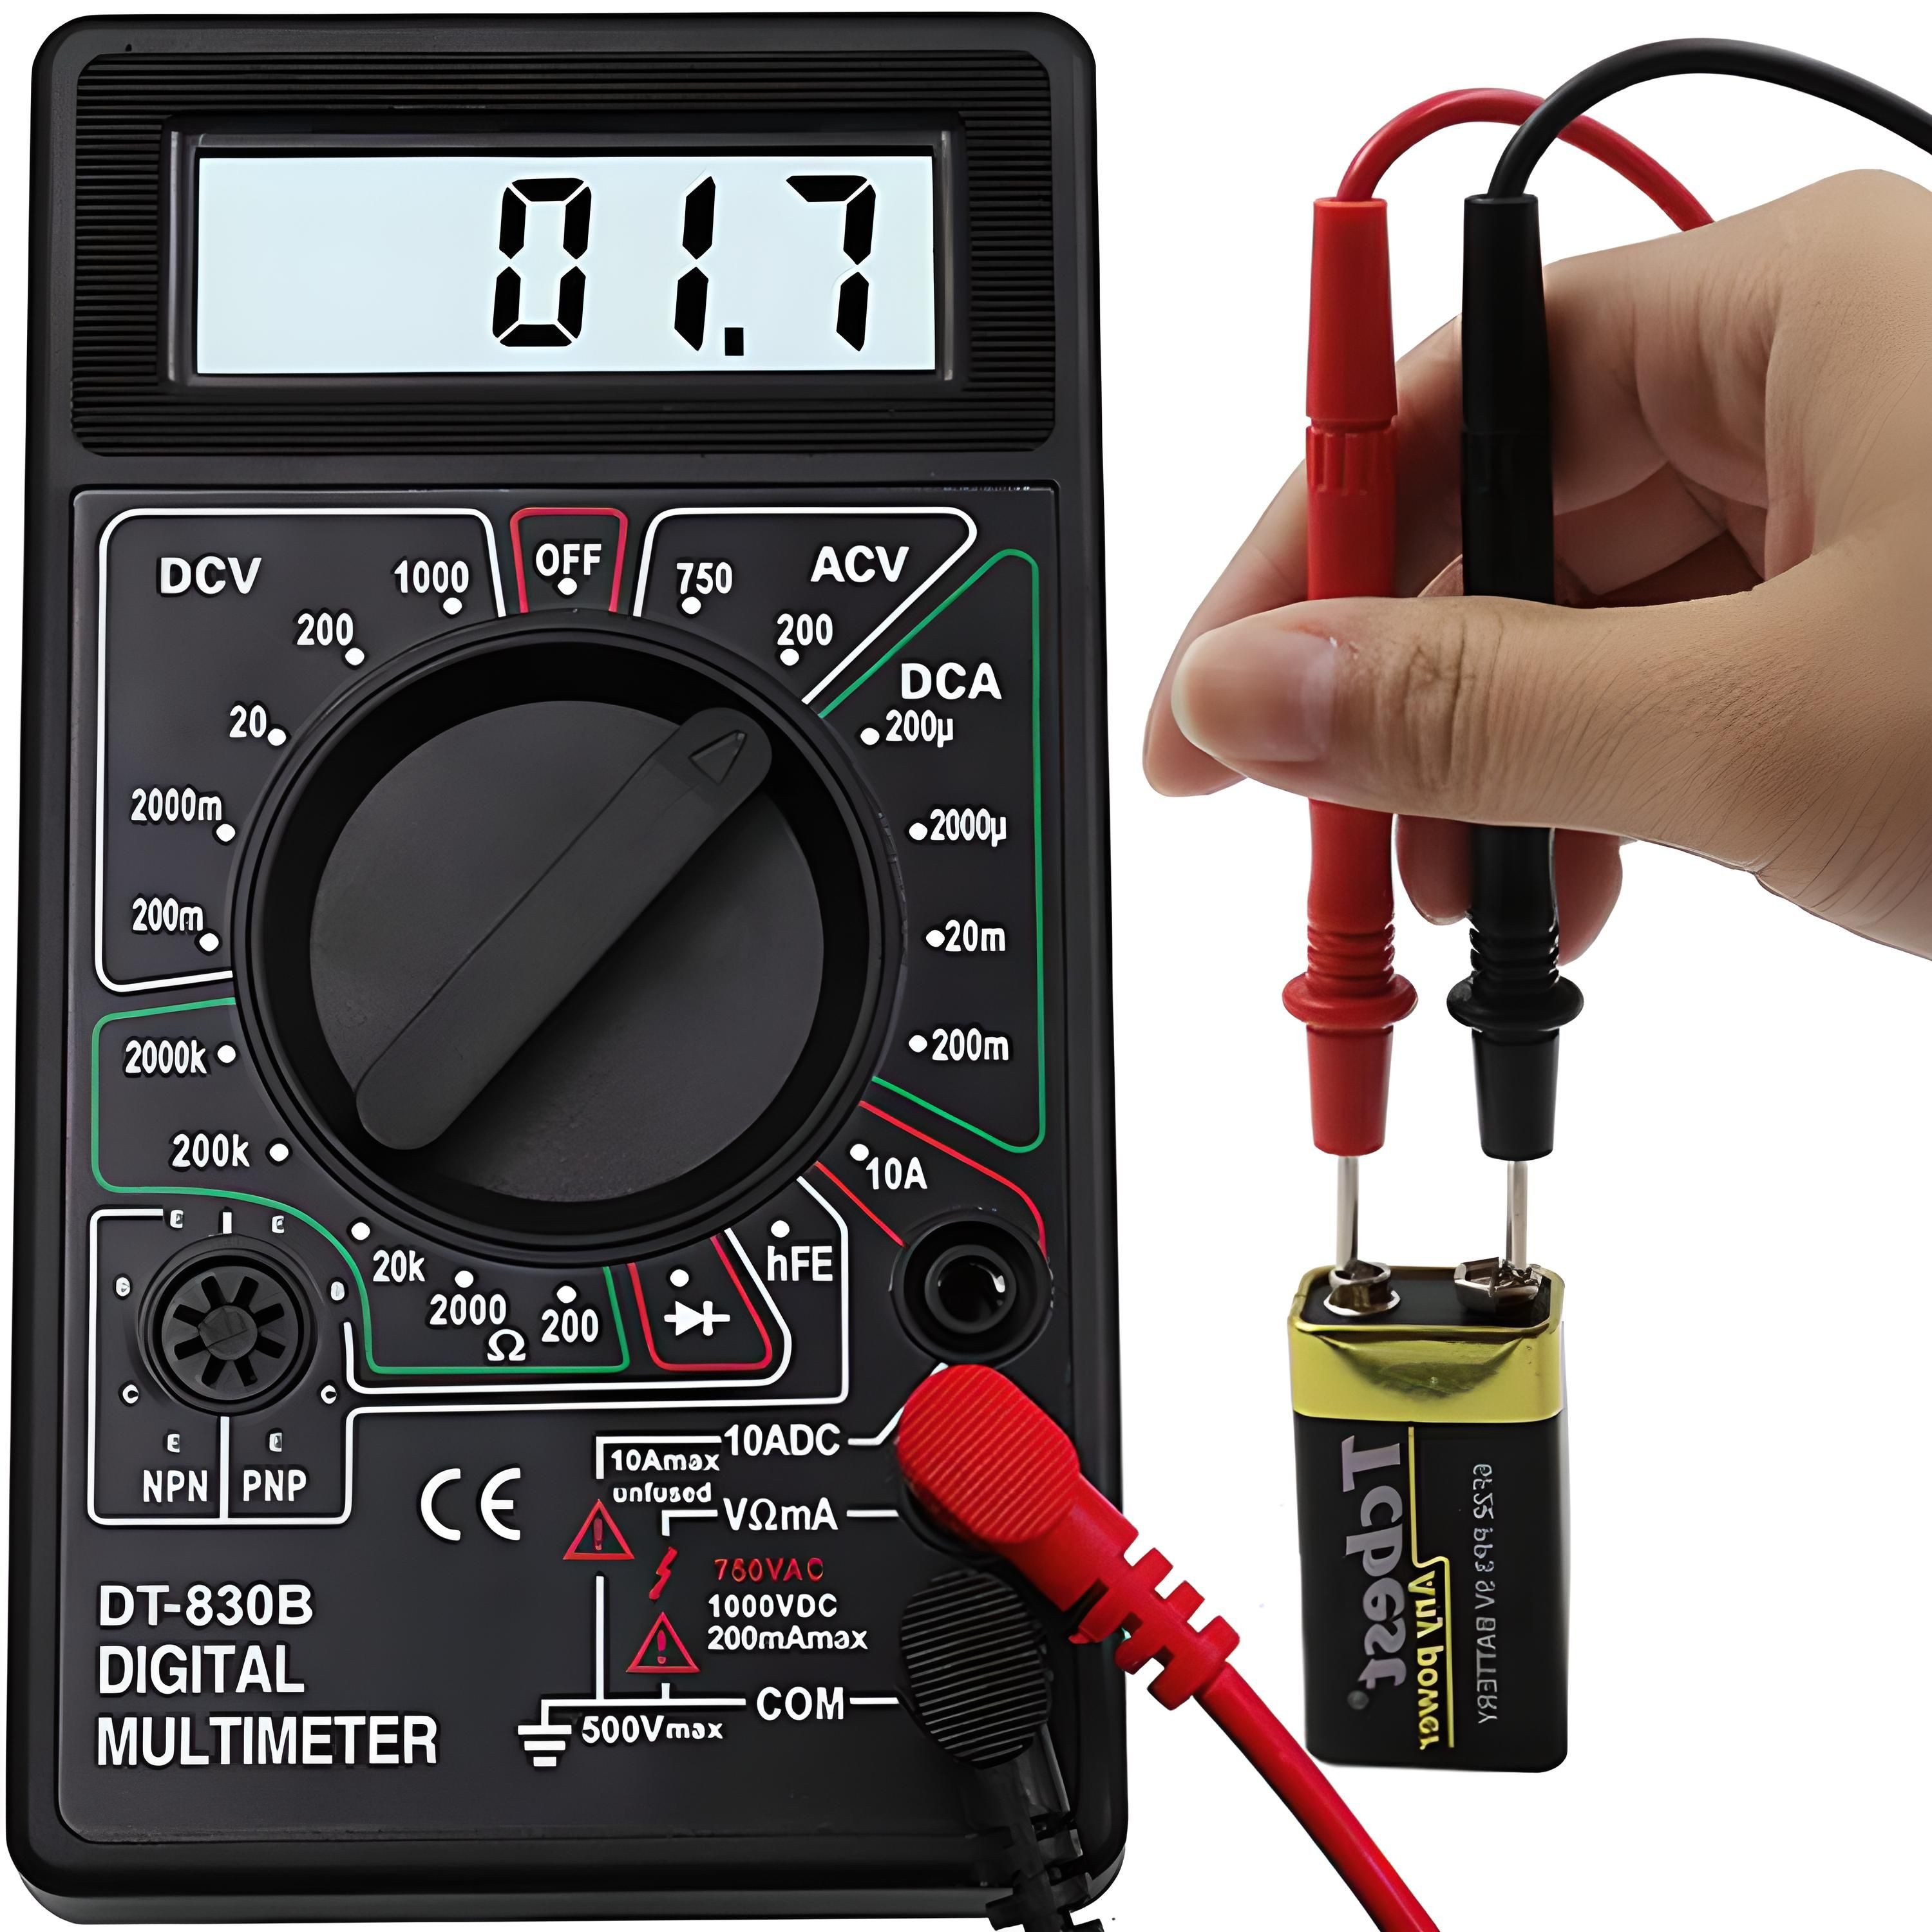 Retoo Spannungsprüfer Digital Multimeter Messgerät AC DC Strommesser Strom Voltmeter, (Digitales Multimeter, Messleitungen, Gebrauchsanweisung, Box), Spannungsmessung von DC und AC, Widerstandsmessung